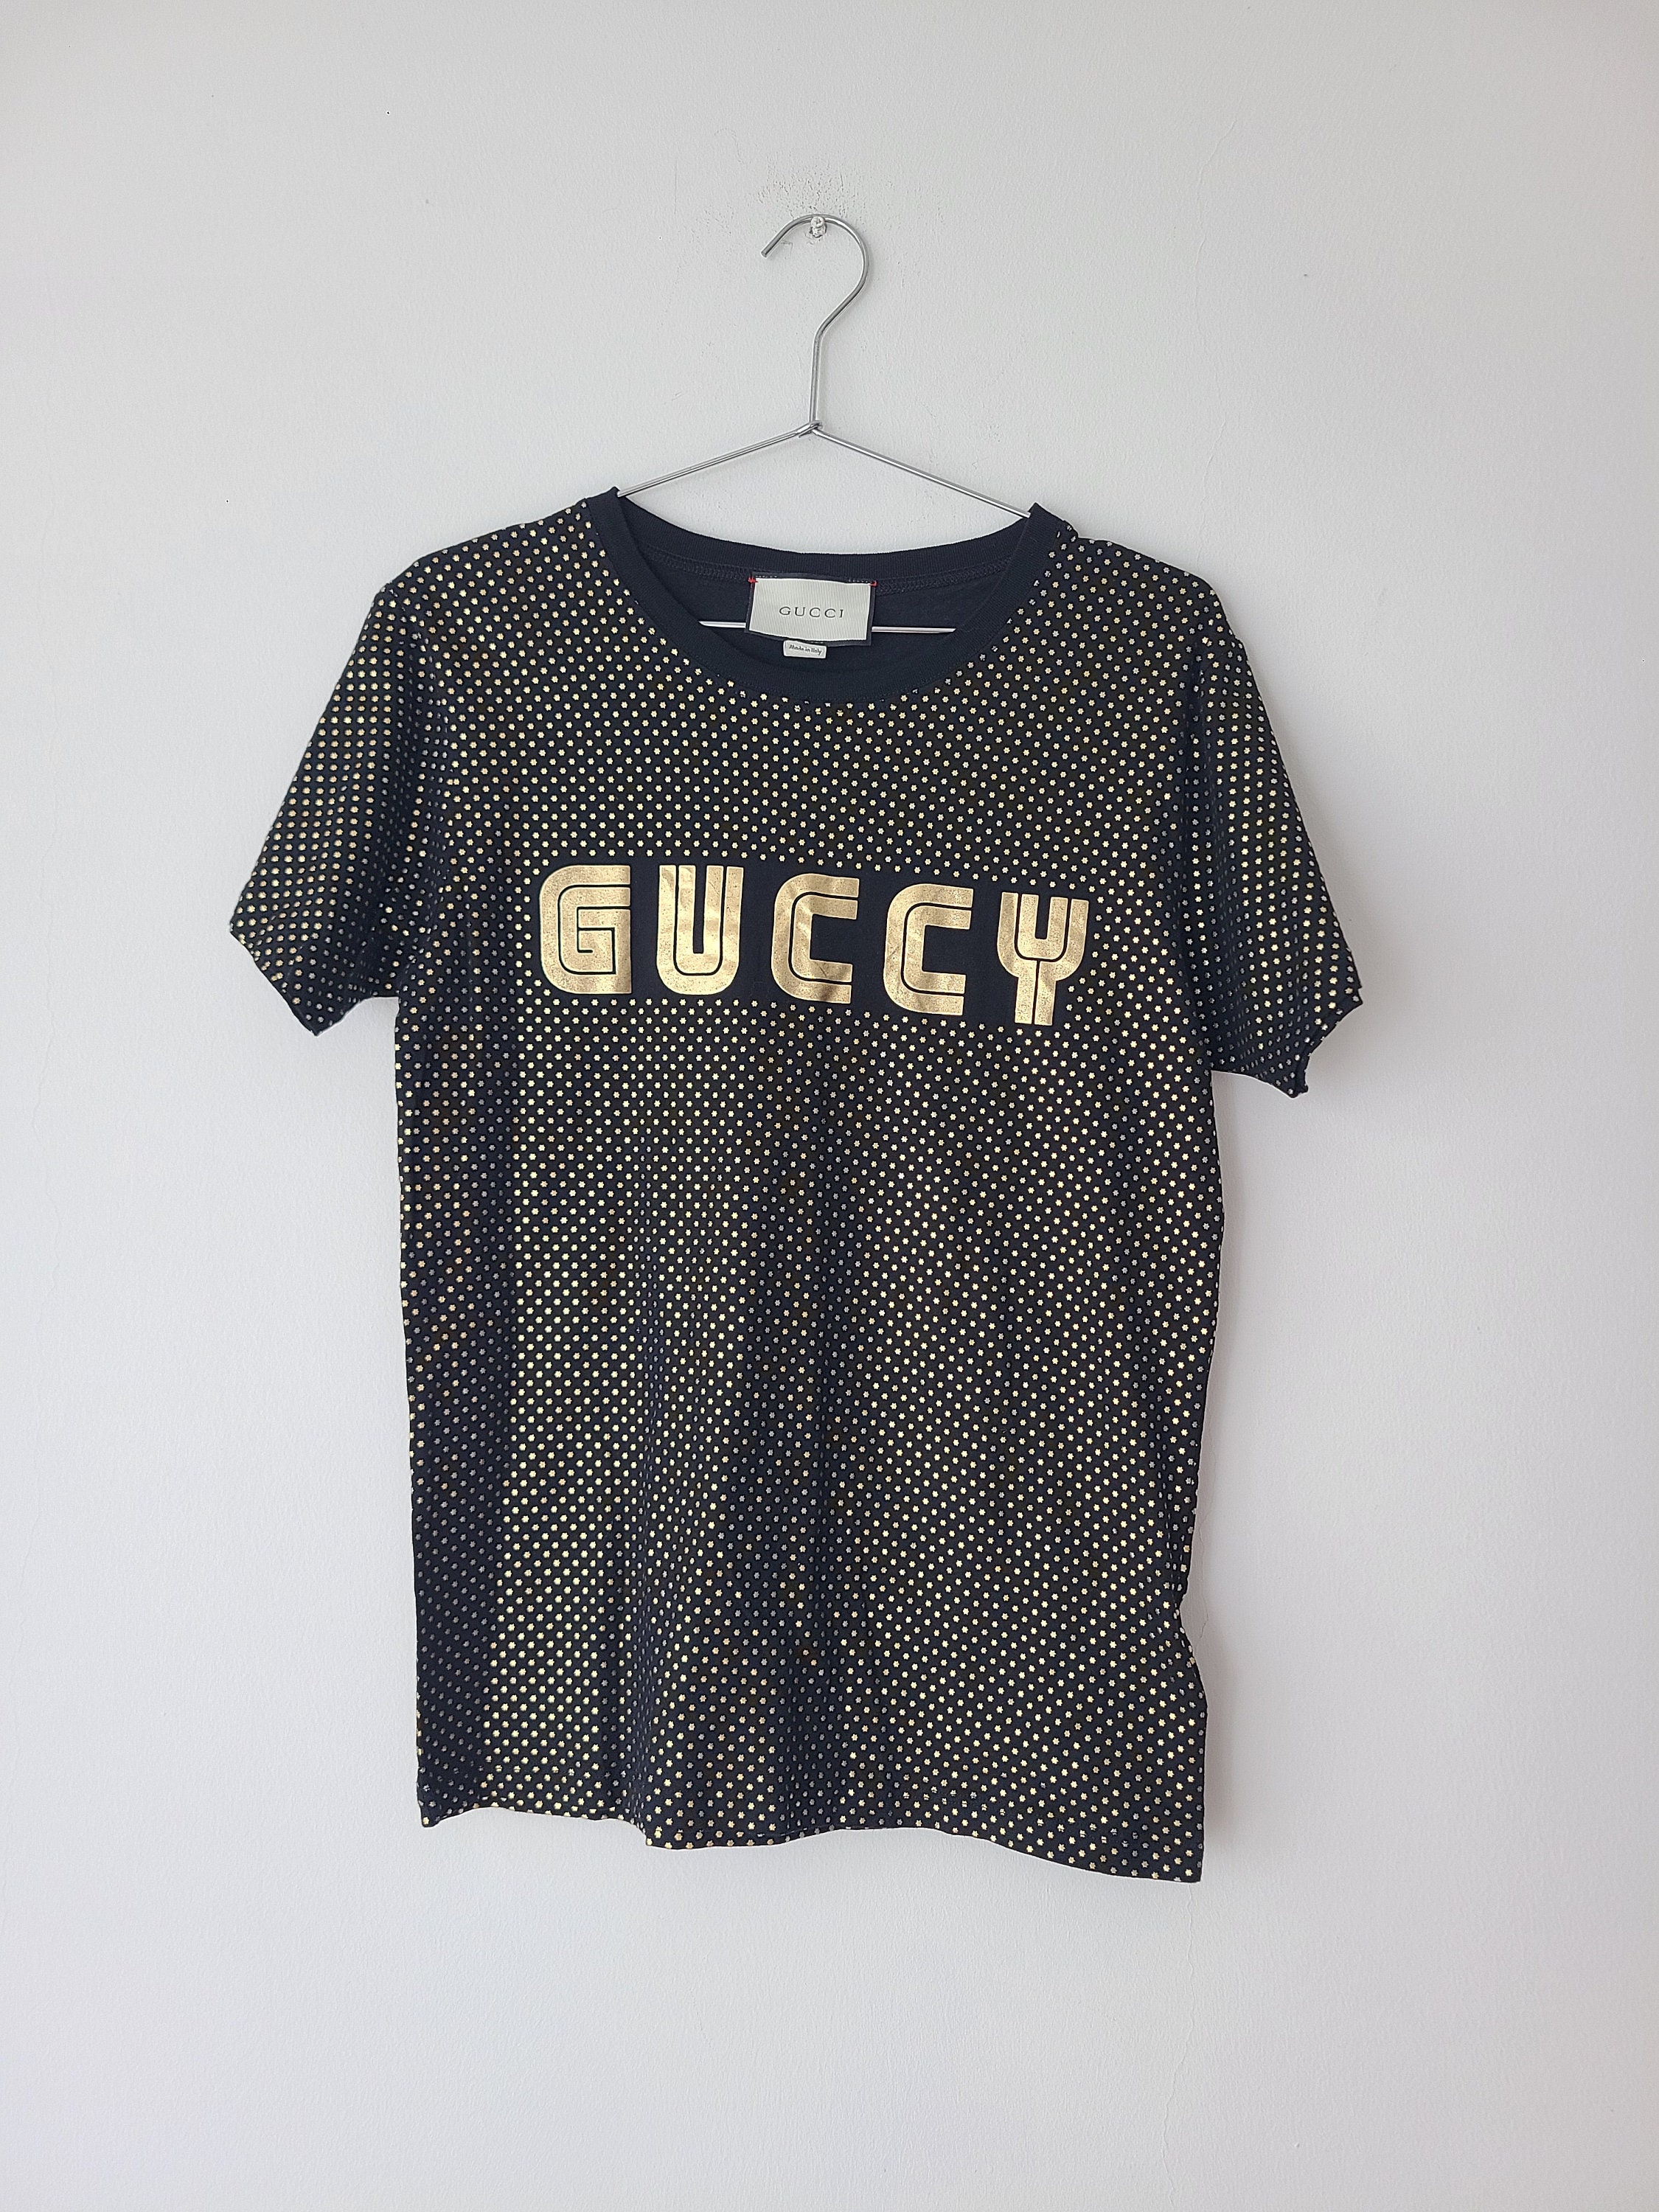 Winnie-The-Pooh Louis Vuitton Chanel Gucci Shirt – Full Printed